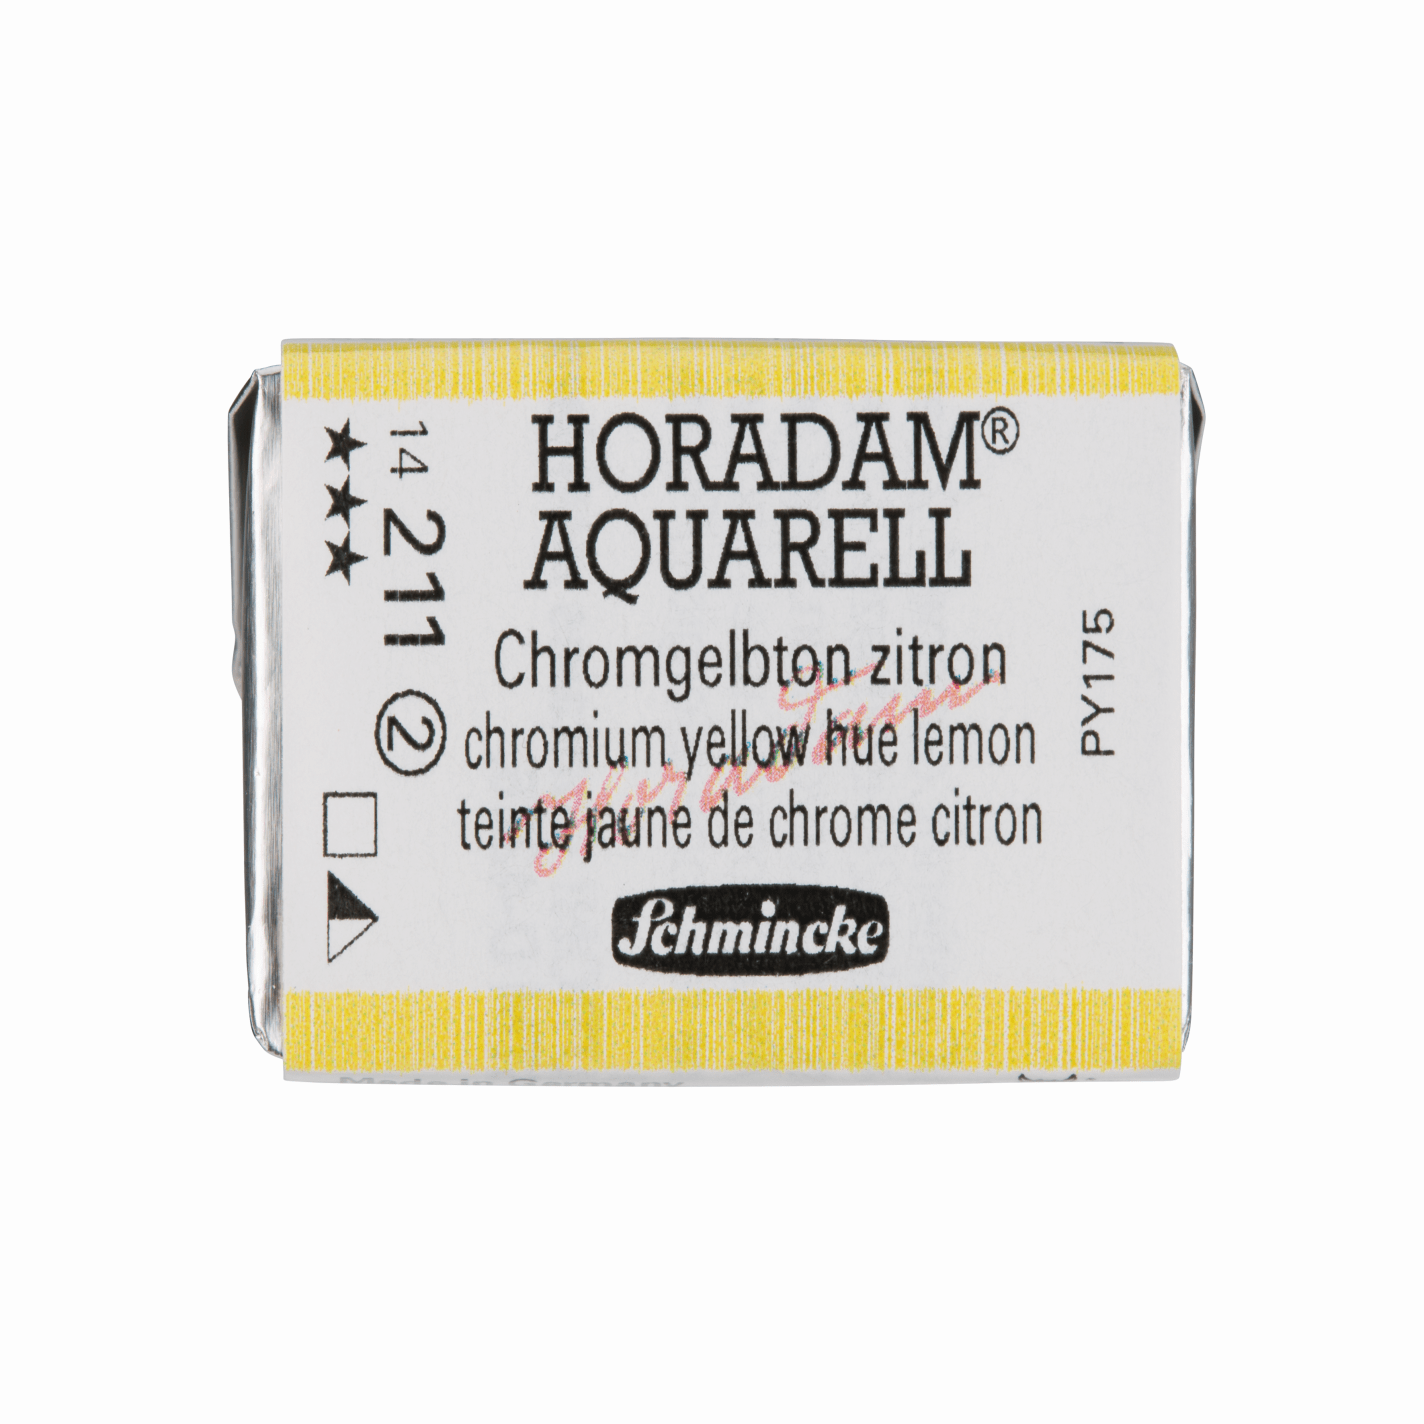 Schmincke Horadam Aquarell pans 1/1 pan Yellow Hue Lemon